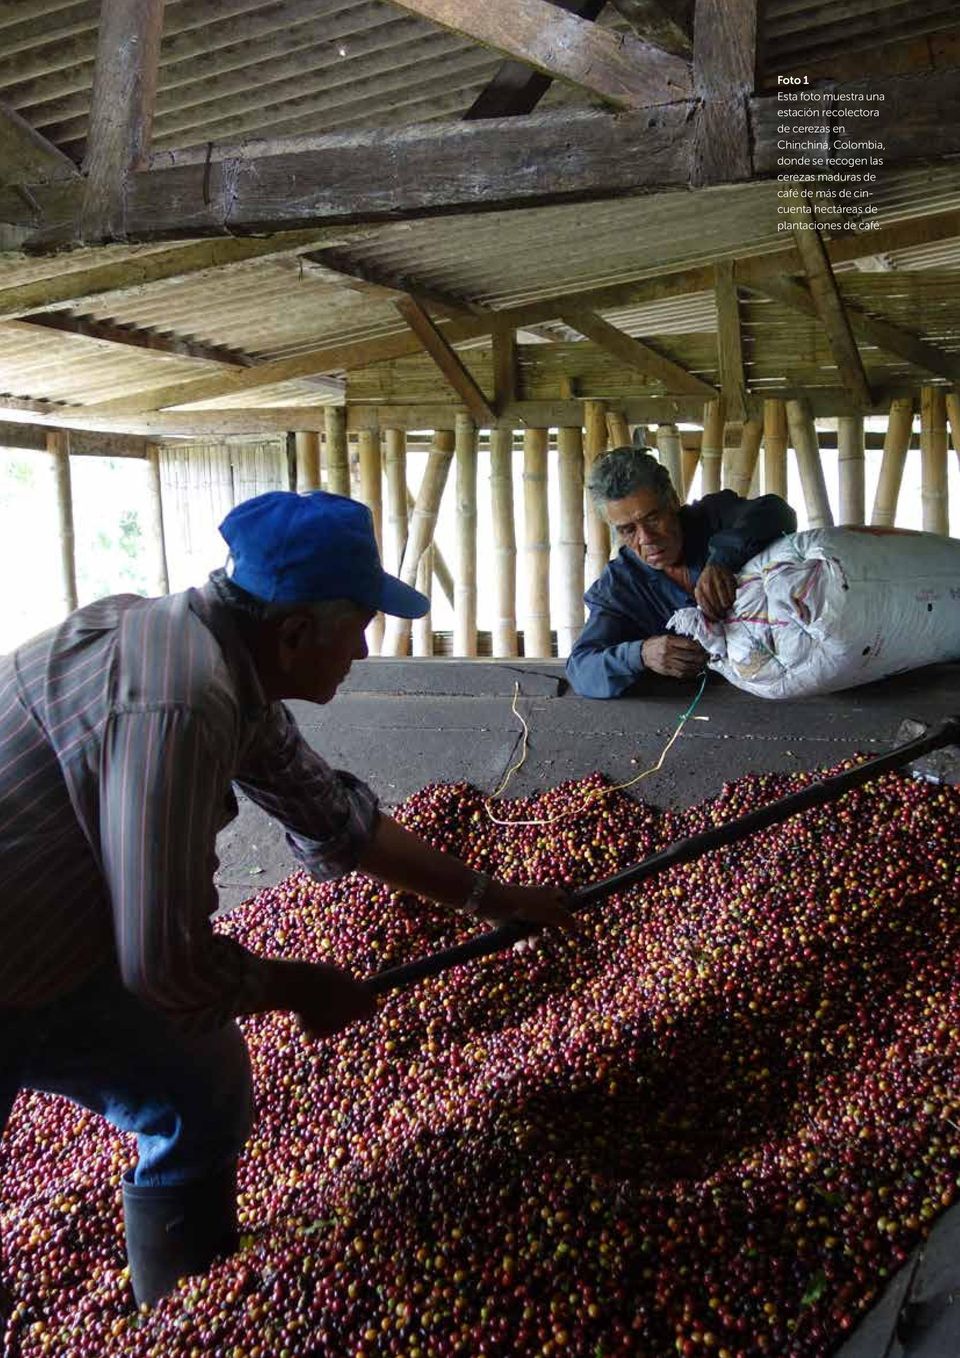 Colombia, donde se recogen las cerezas